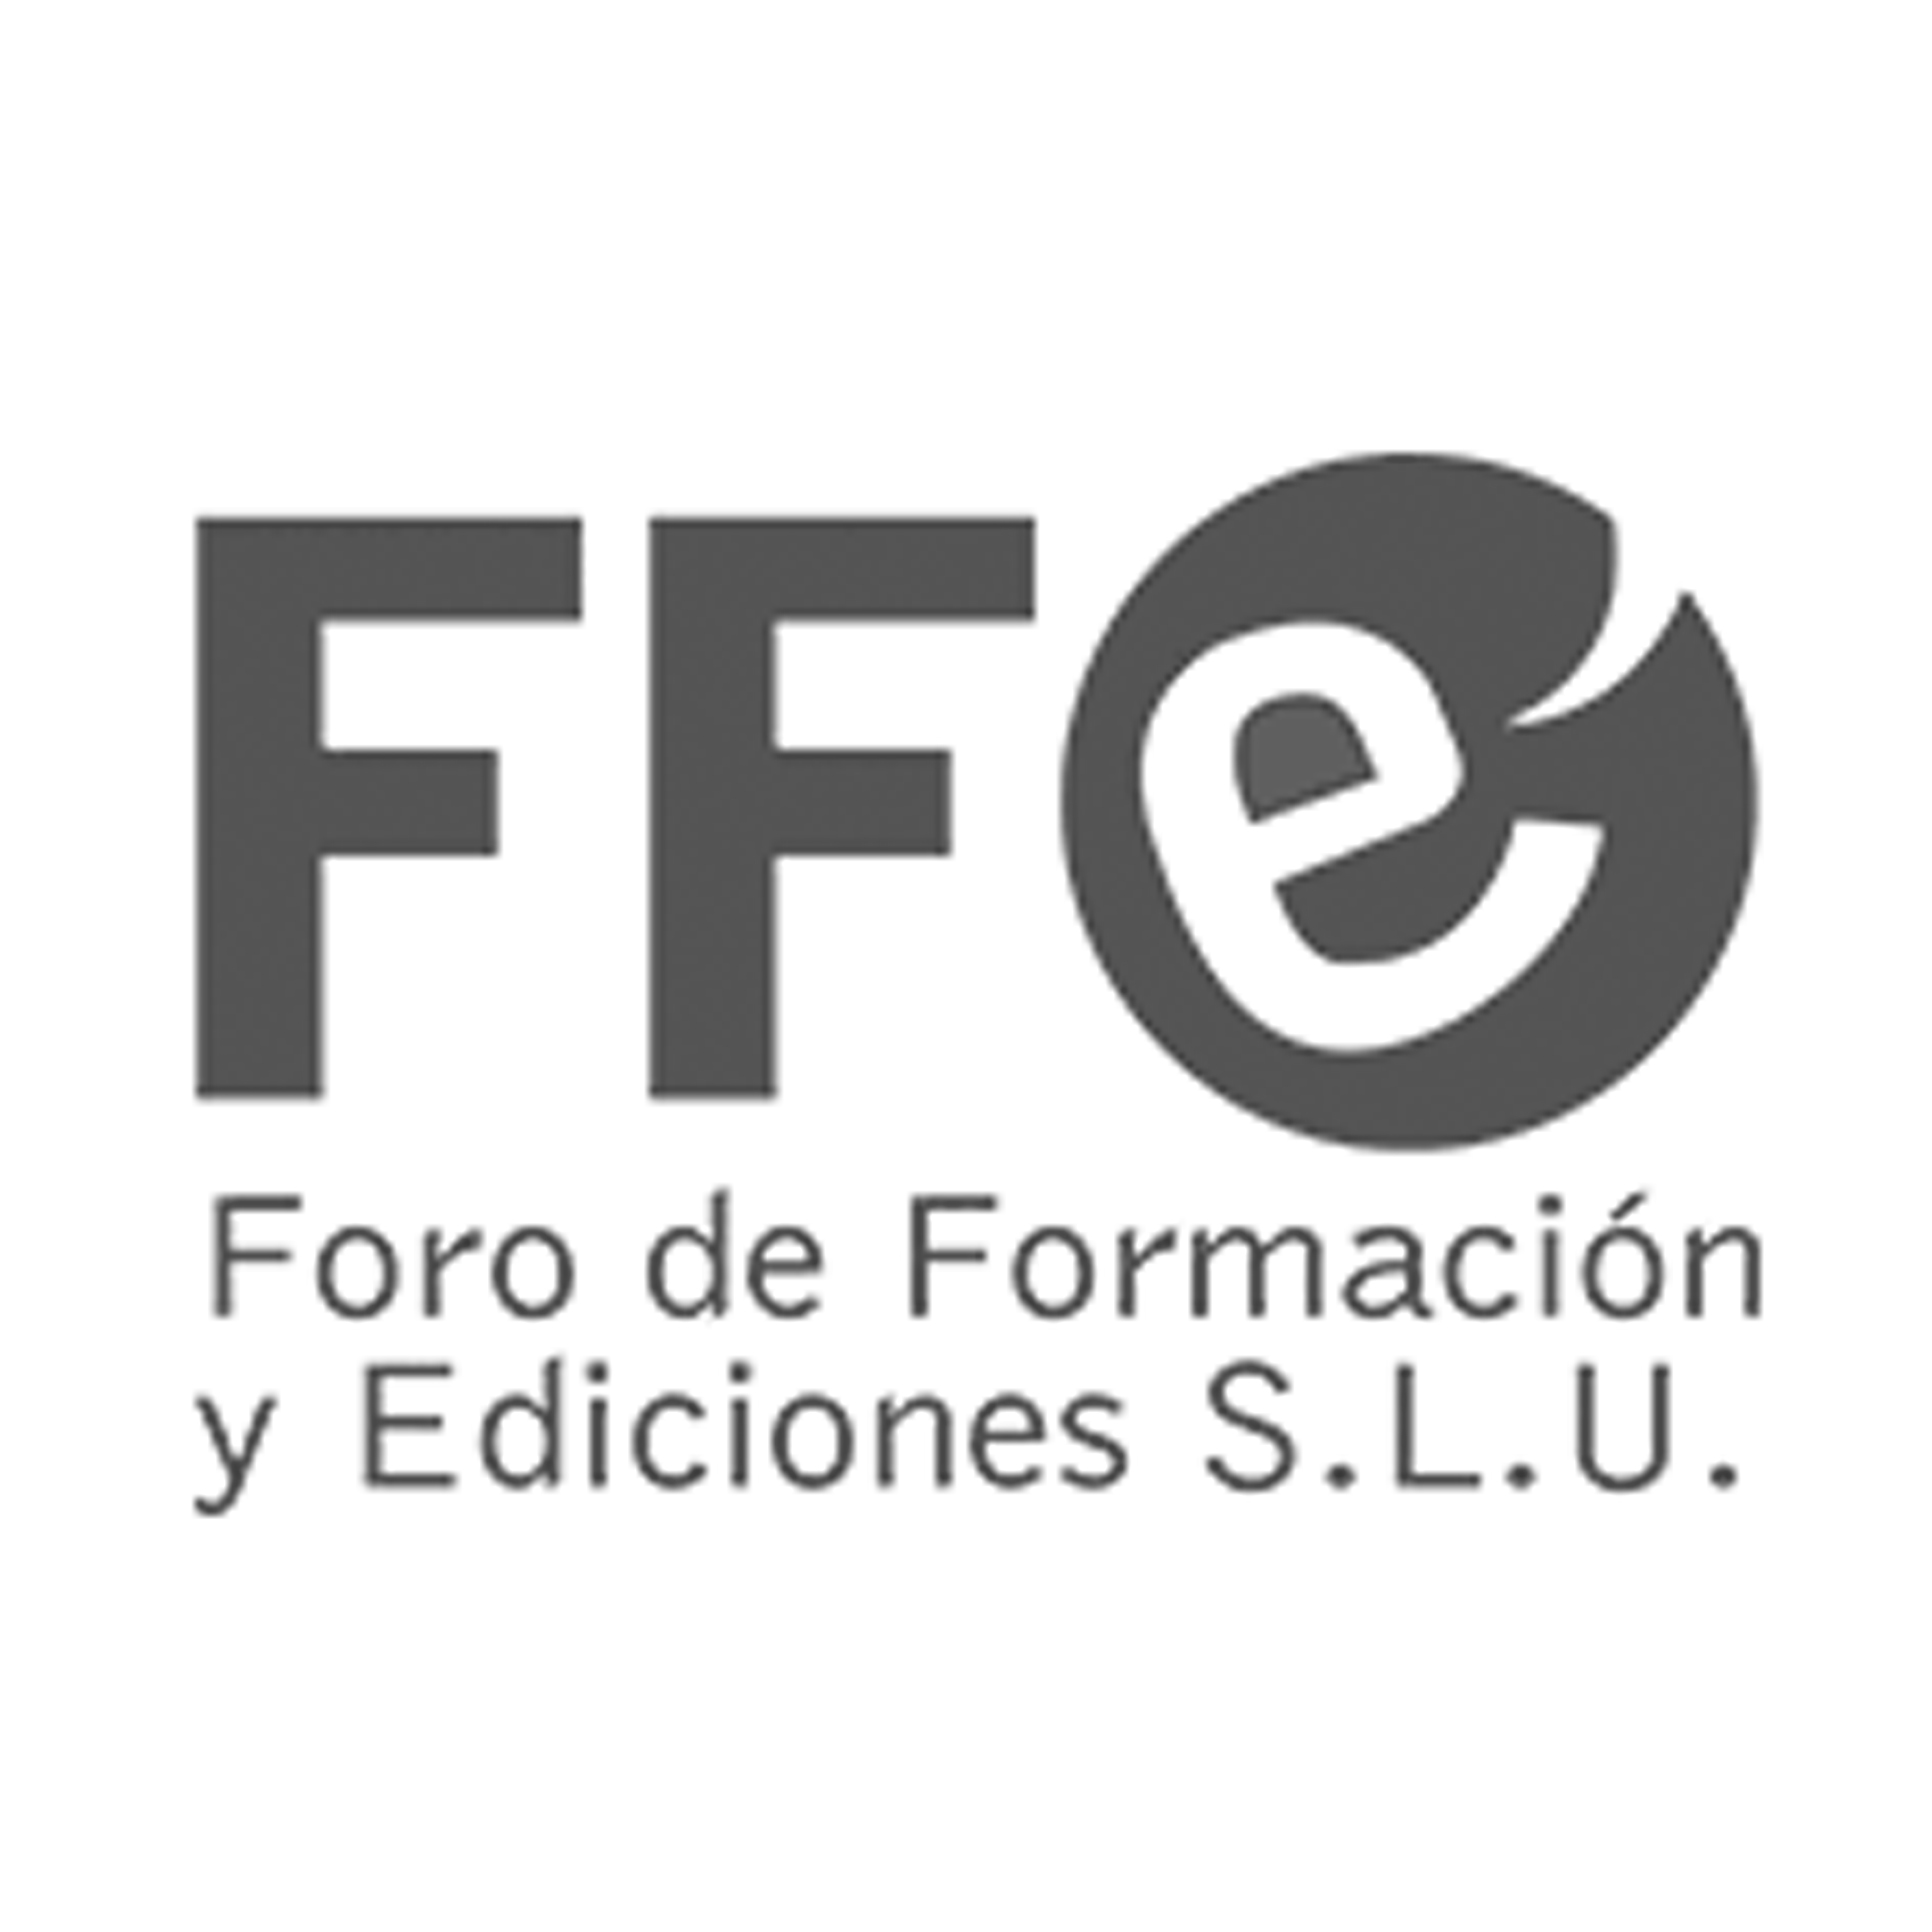 03_FORO DE FORMACIÓN